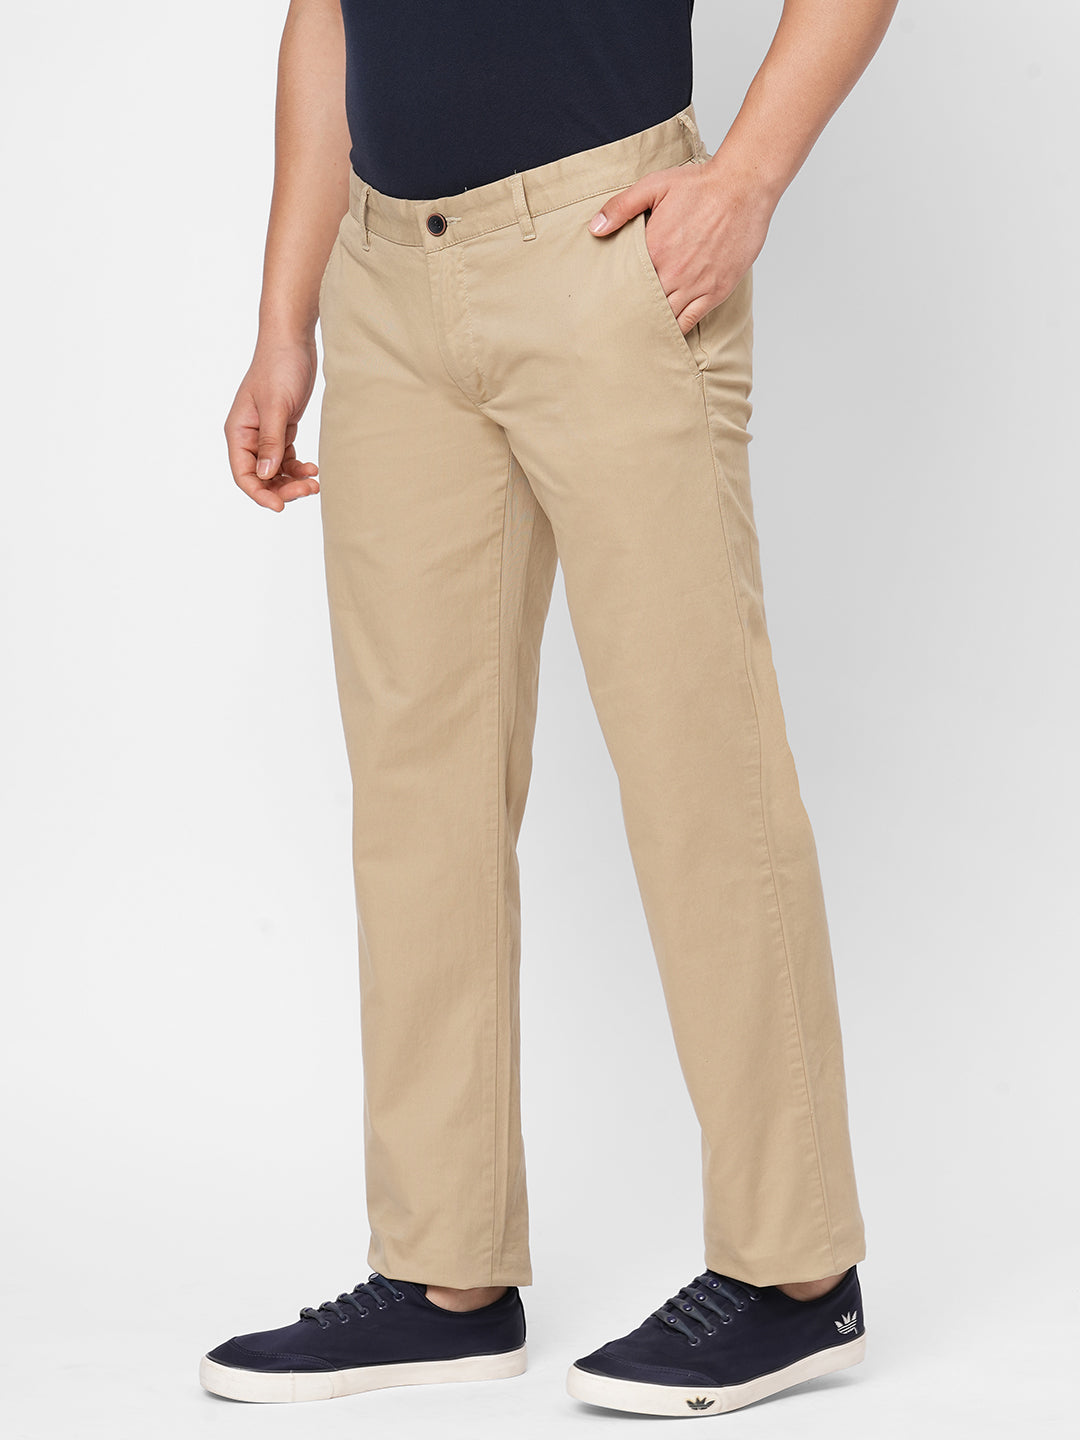 Men's Fashion Plaid Pants beige & Copper - Etsy